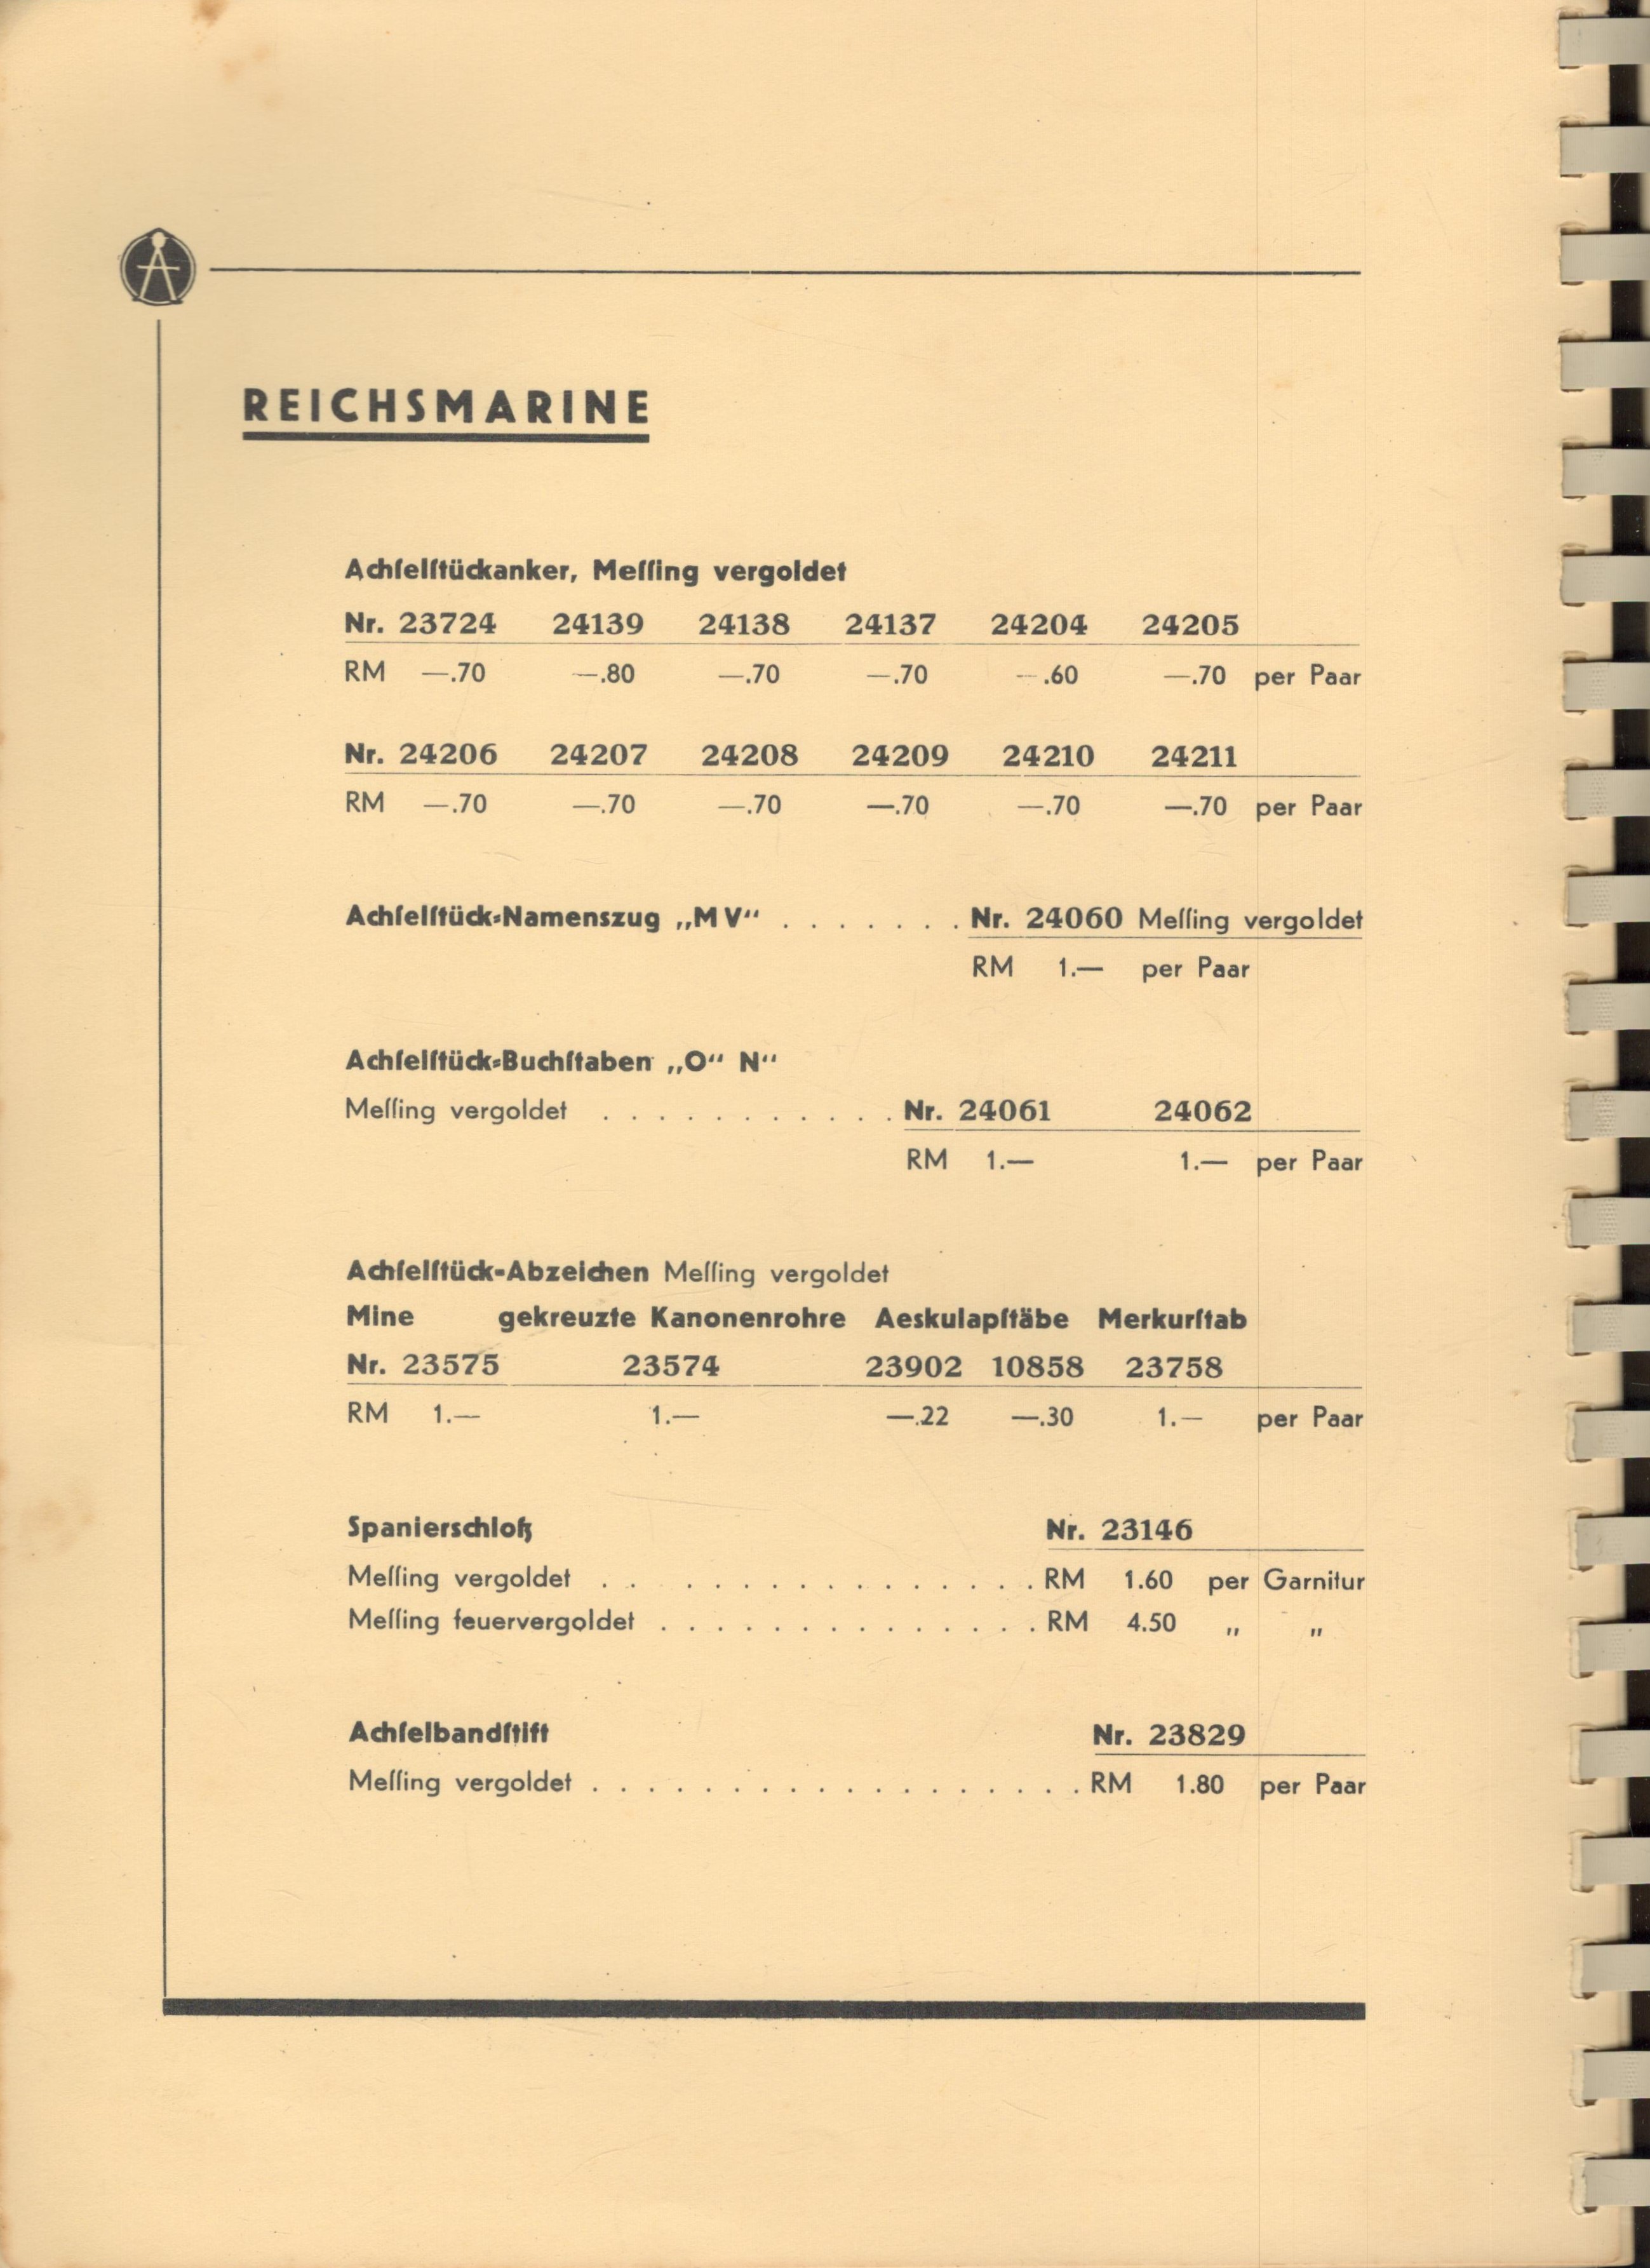 F.W. Assmann & Söhne Lüdenscheid Luftwaffe original catalogue and price list. 12x9 inch in size. - Image 10 of 12